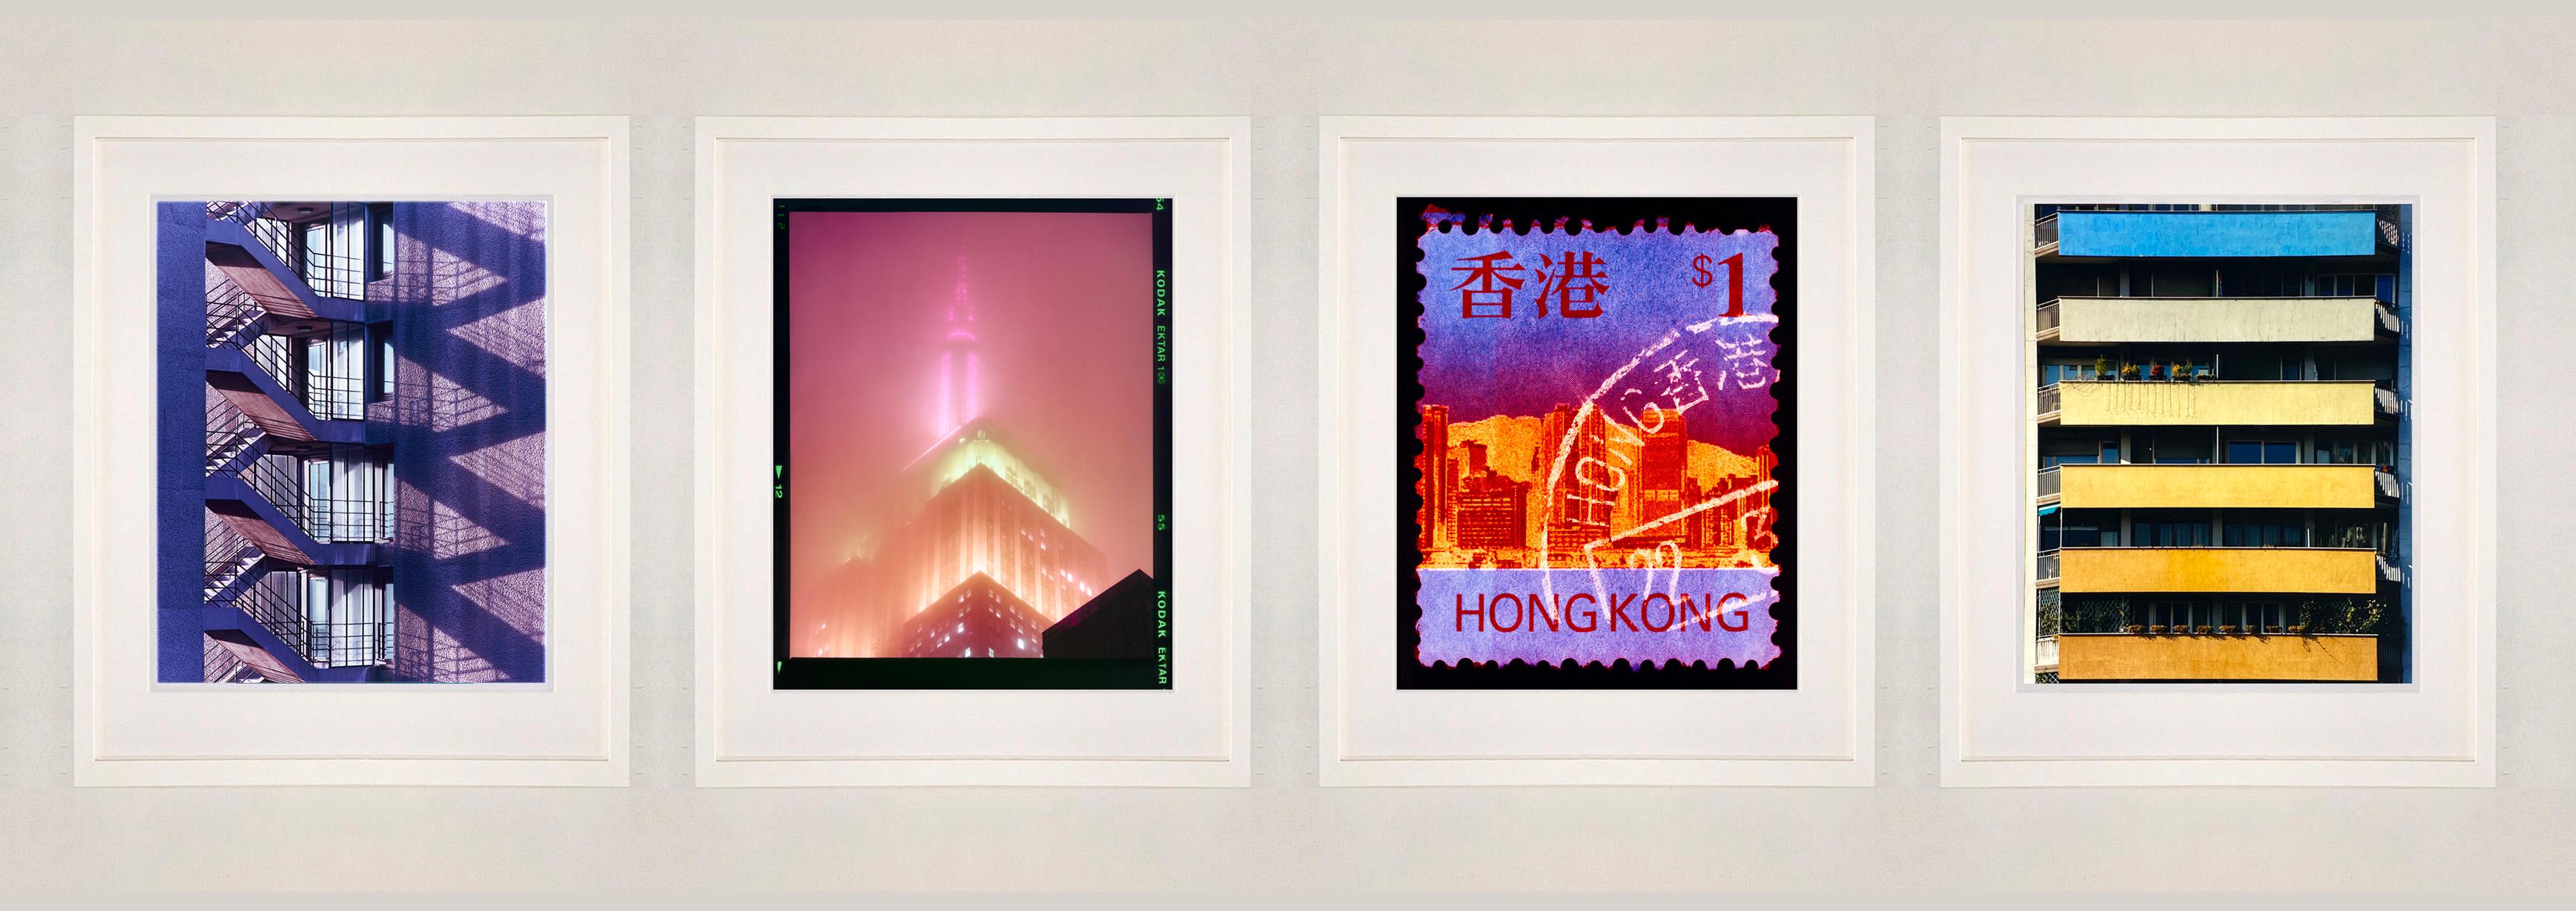 London, Mailand, New York, Hongkong (V1) – Satz von vier gerahmten Farbfotografien (Zeitgenössisch), Photograph, von Richard Heeps